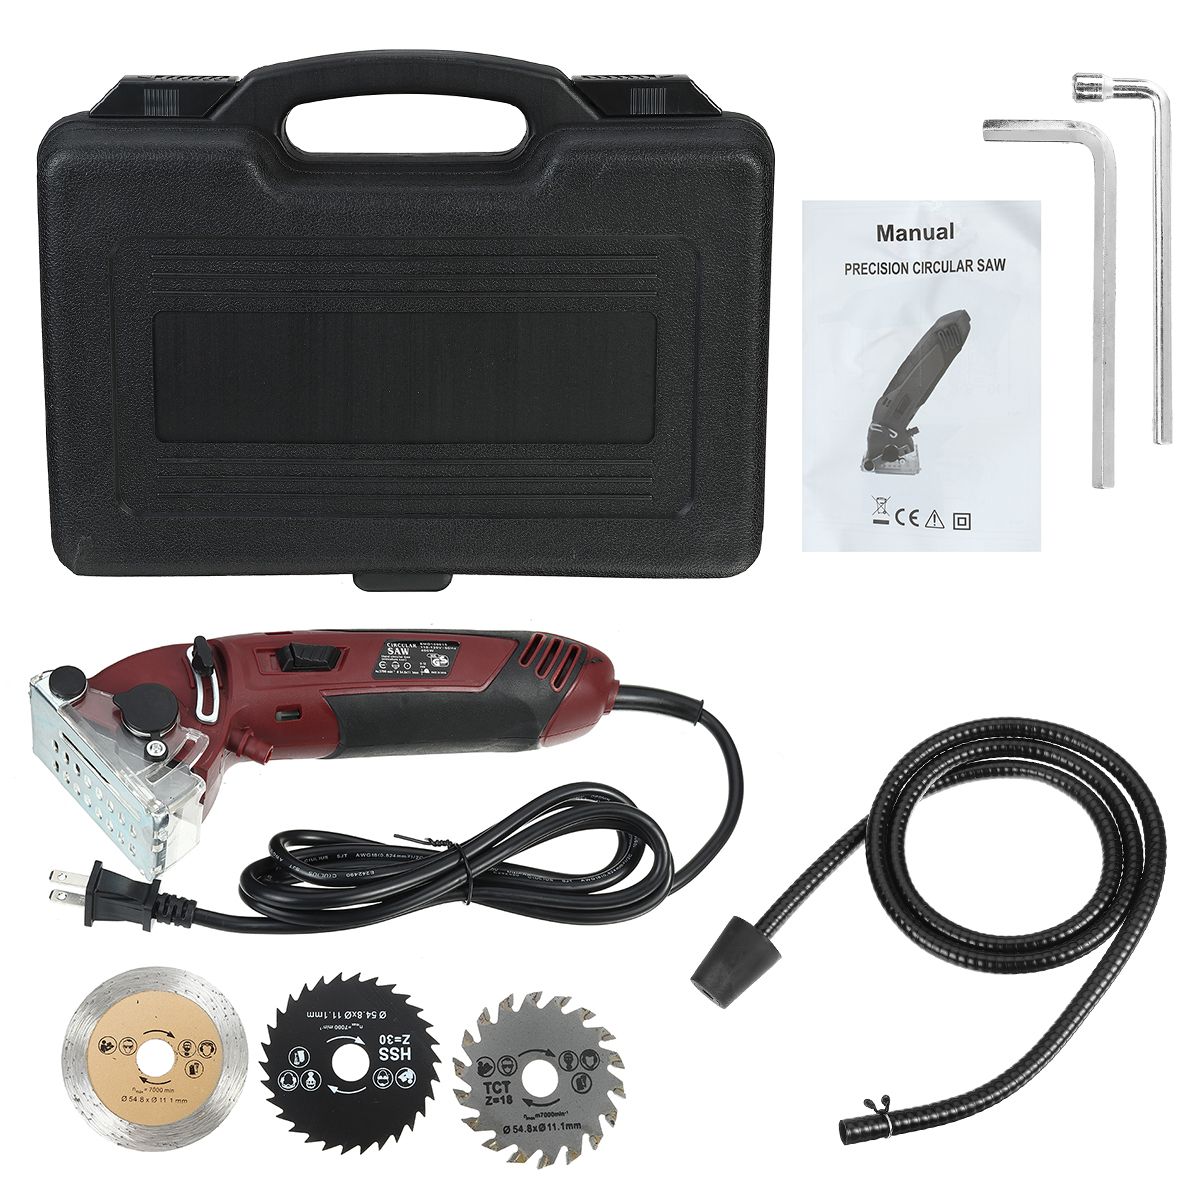 Mini-Cutting-Machine-Electric-Laser-Circular-Saw-Multi-Functional-Handheld-Grinder-Kit-Carpenter-Woo-1760083